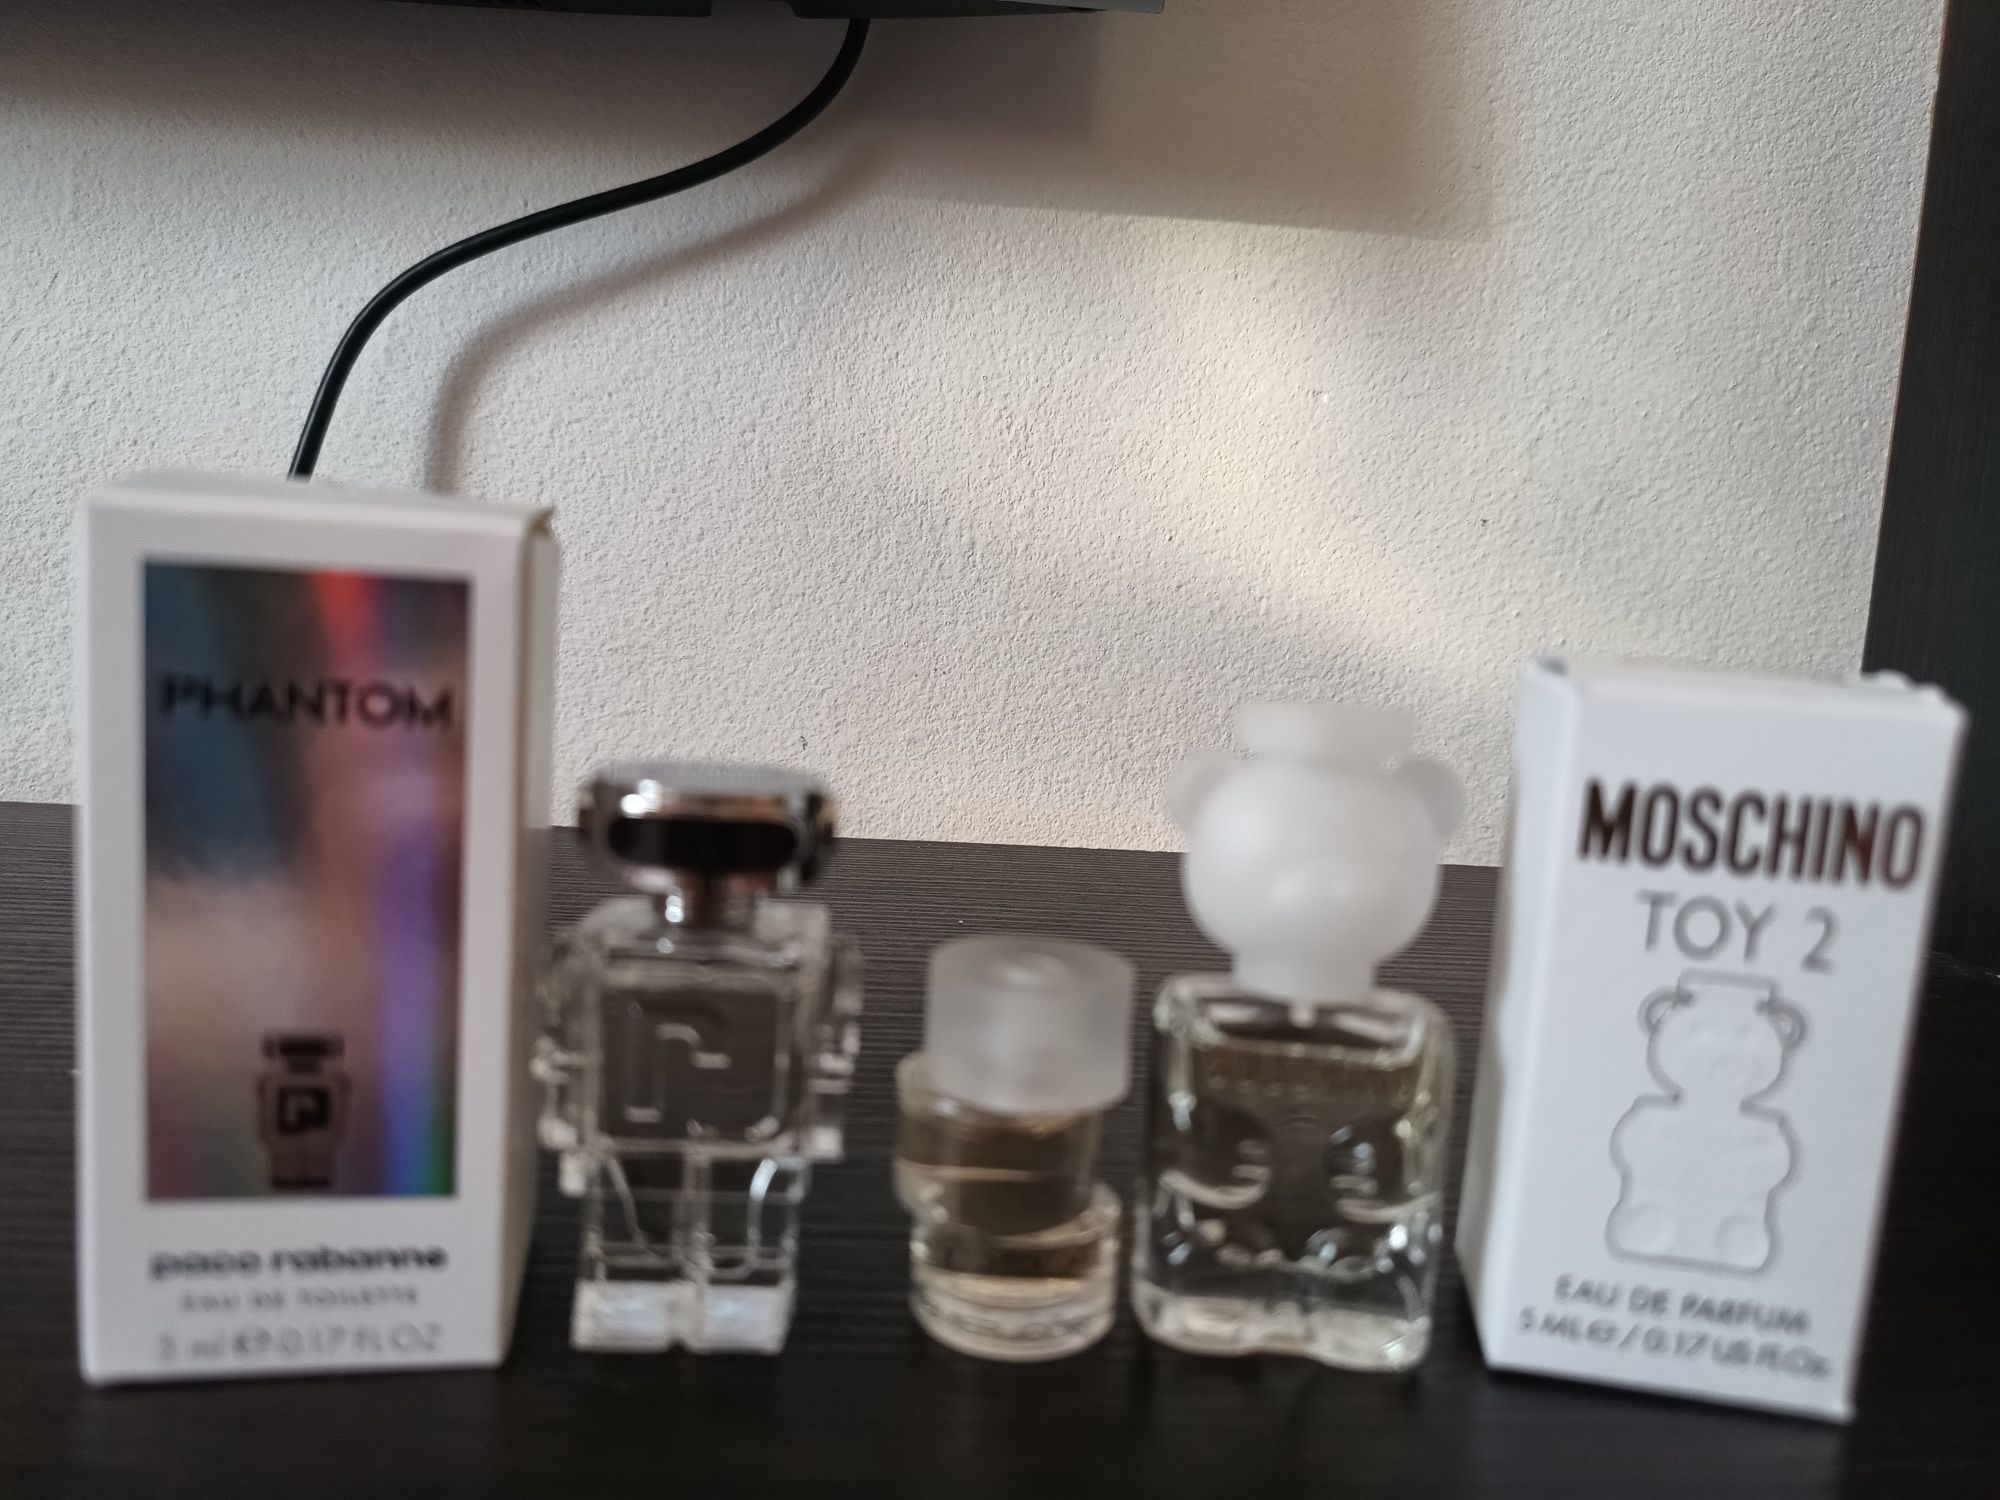 Miniaturi de parfum